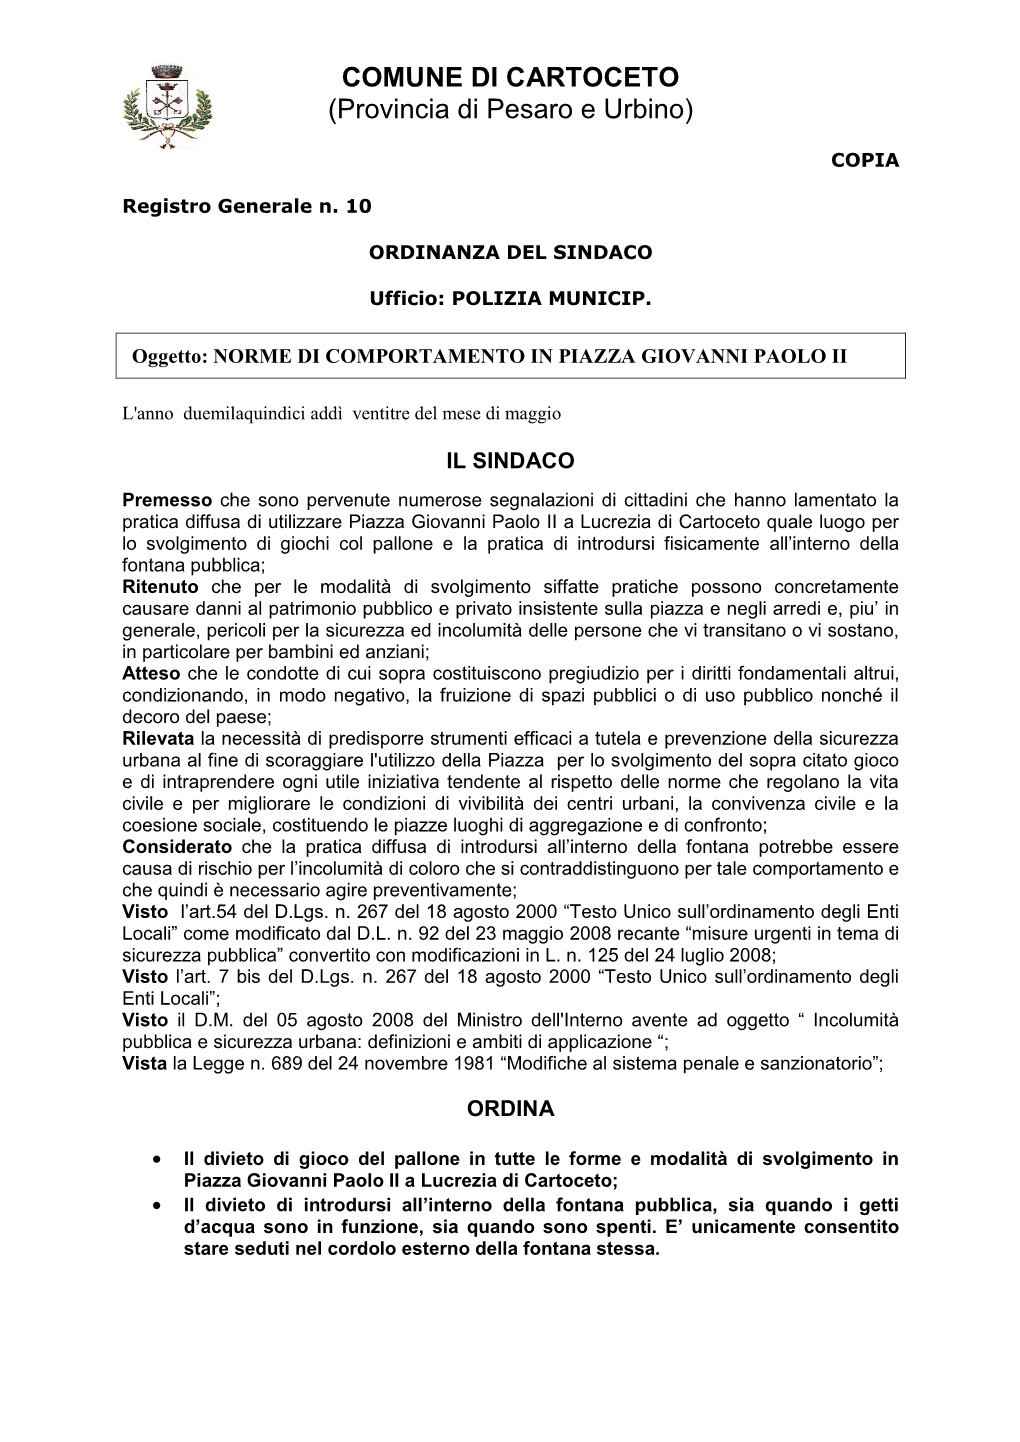 COMUNE DI CARTOCETO (Provincia Di Pesaro E Urbino)